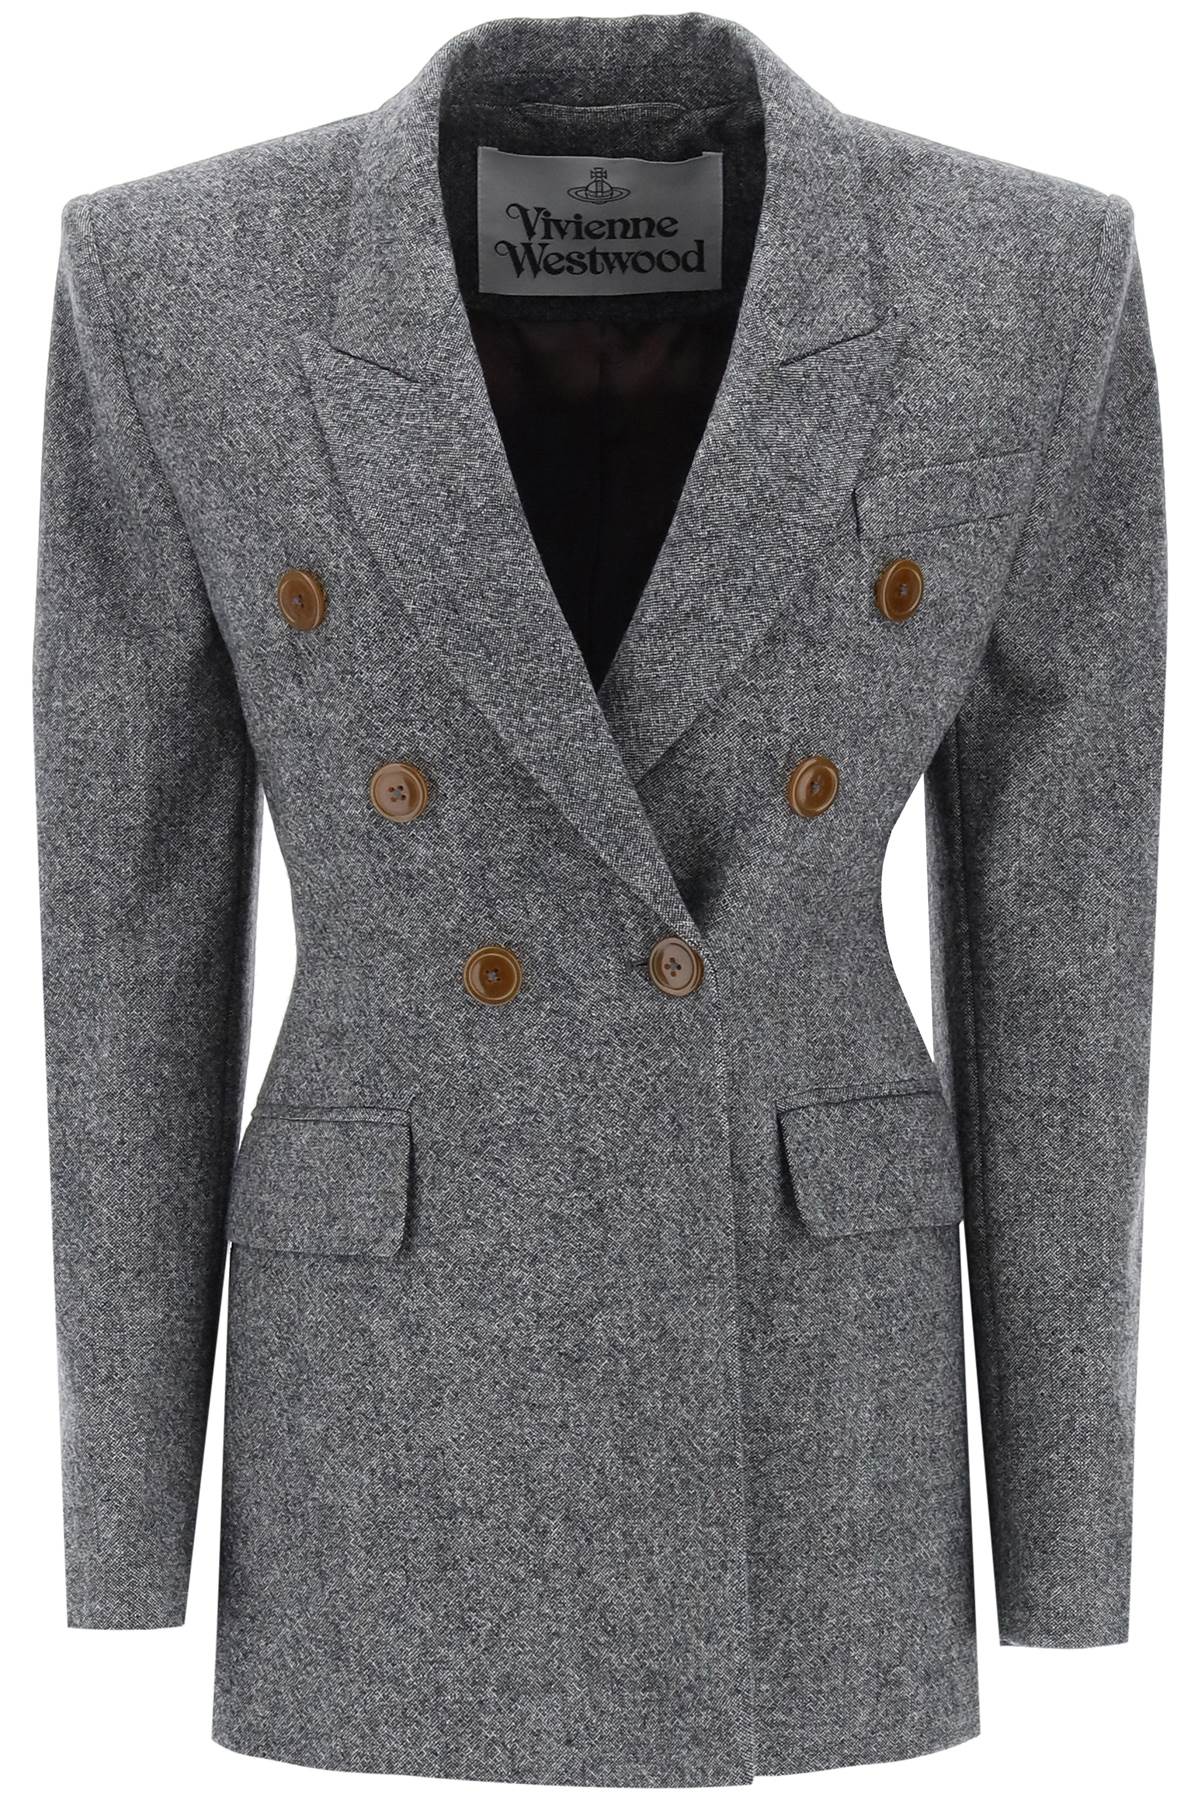 Vivienne westwood lauren jacket in donegal tweed-0